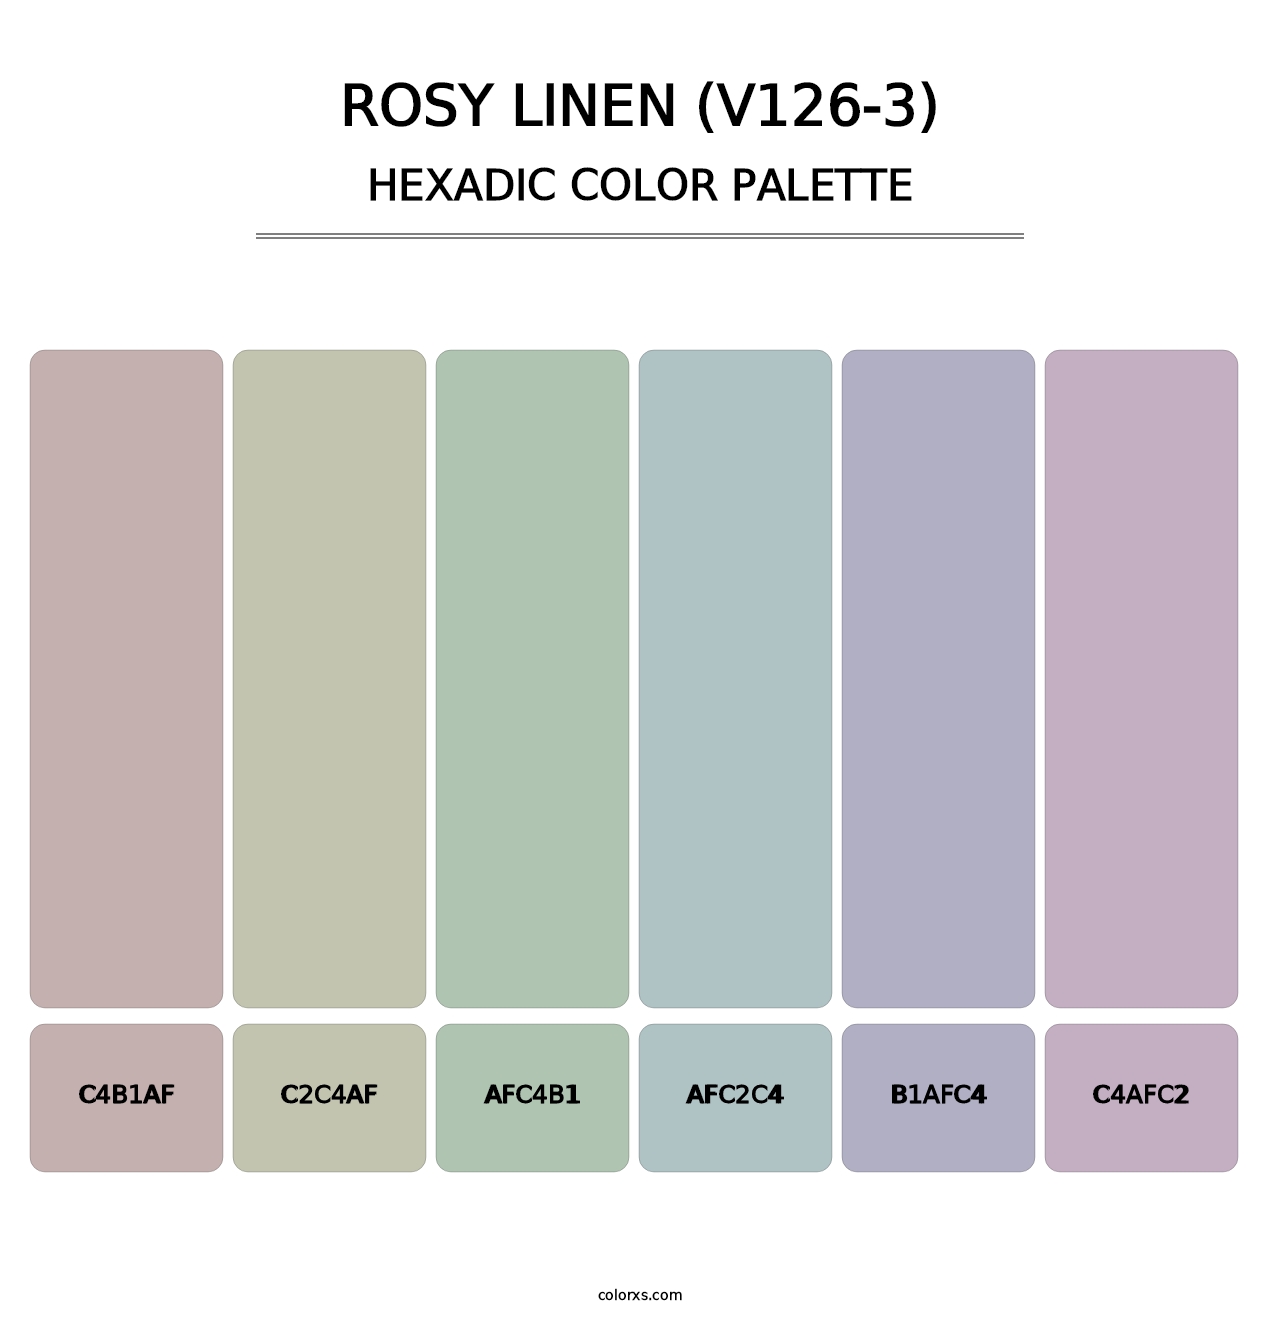 Rosy Linen (V126-3) - Hexadic Color Palette